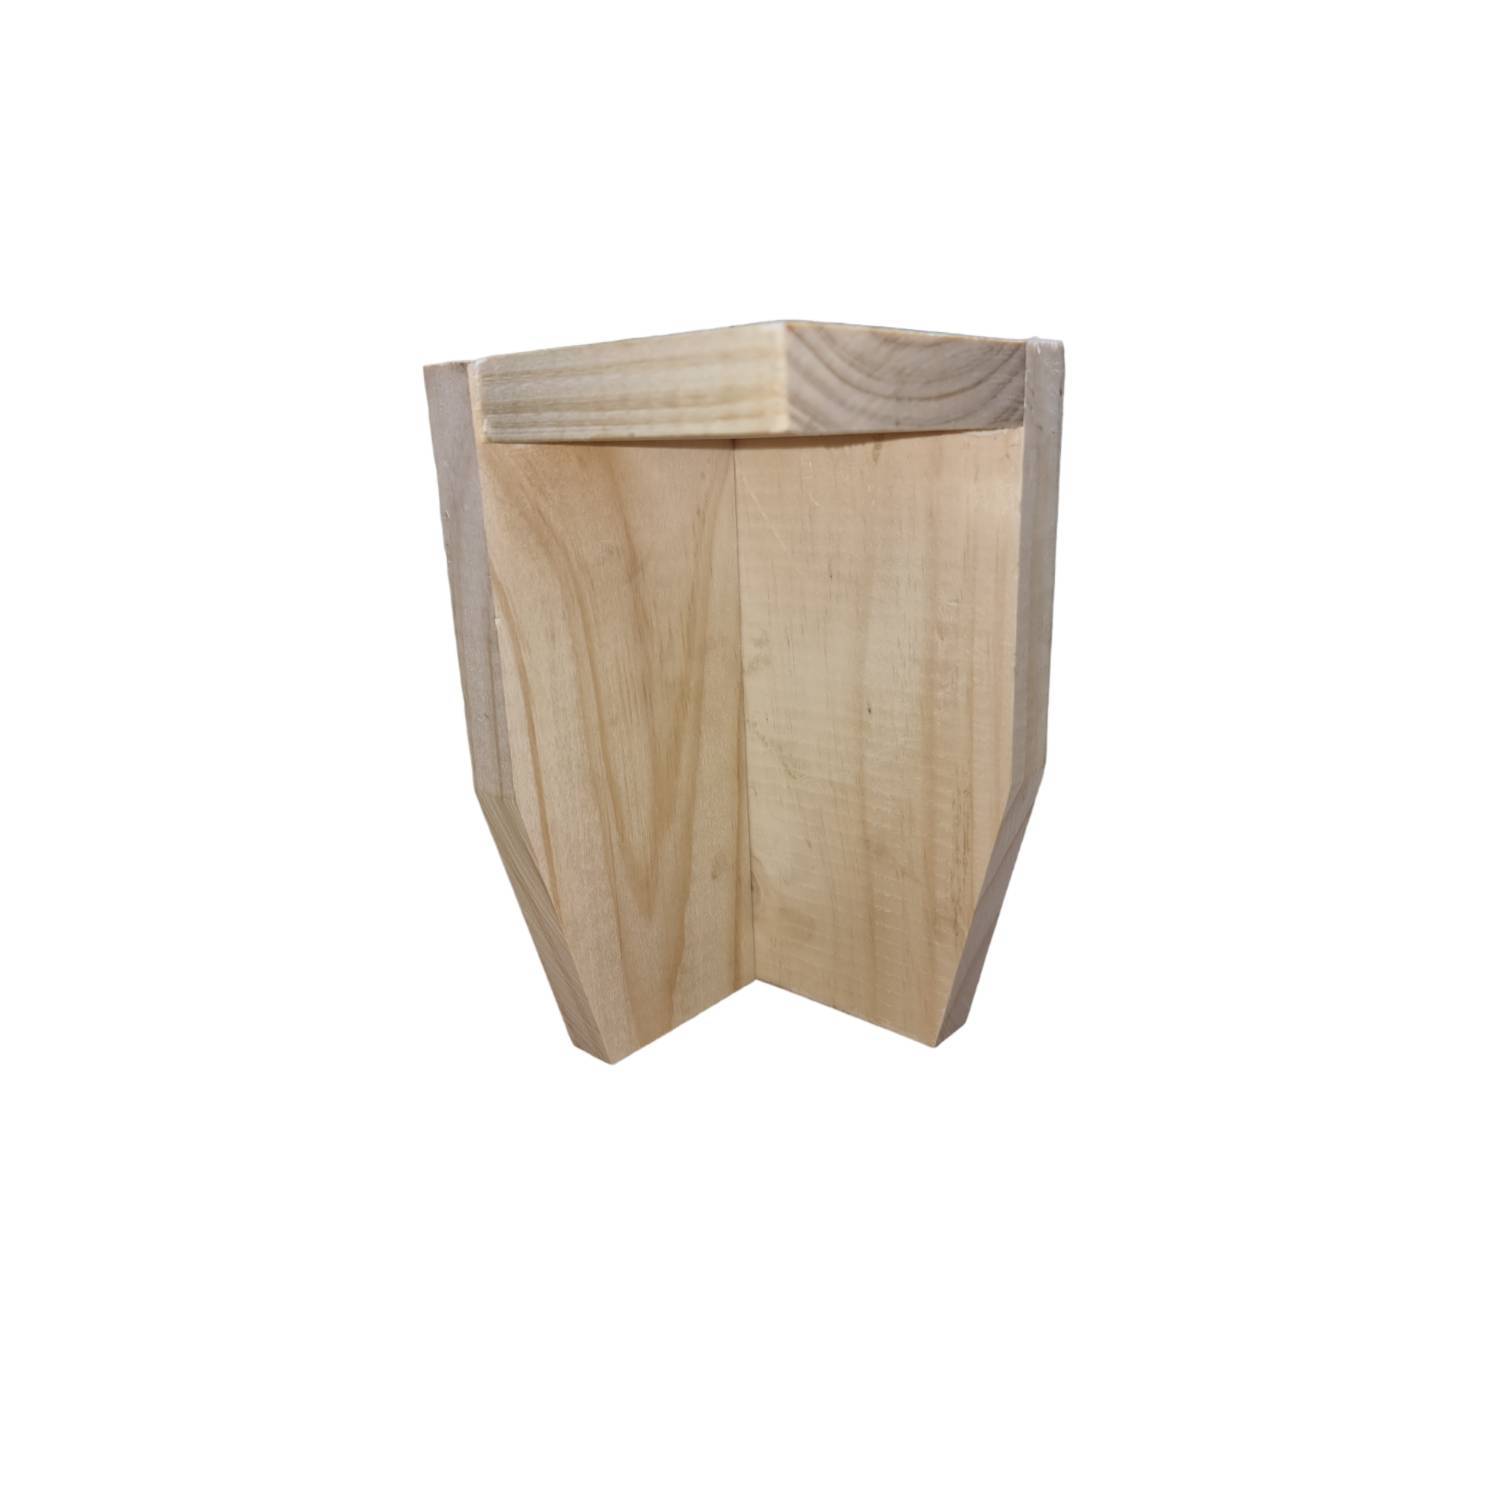 Altura de la pata de madera: 20cm – XPATAS